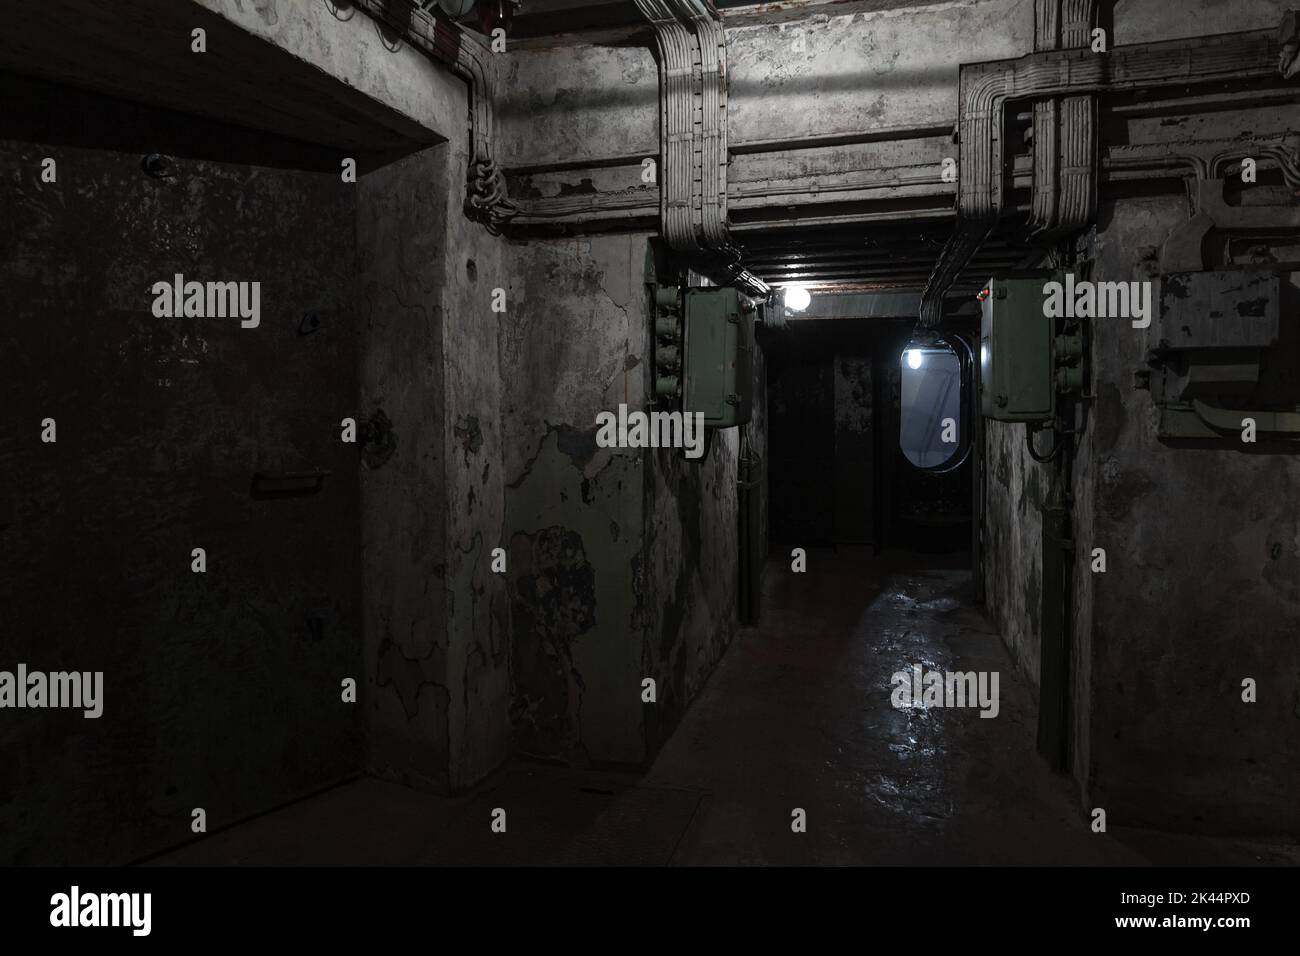 Astratto scuro bunker militare interno, grungy camere sotterranee con scarsa illuminazione Foto Stock